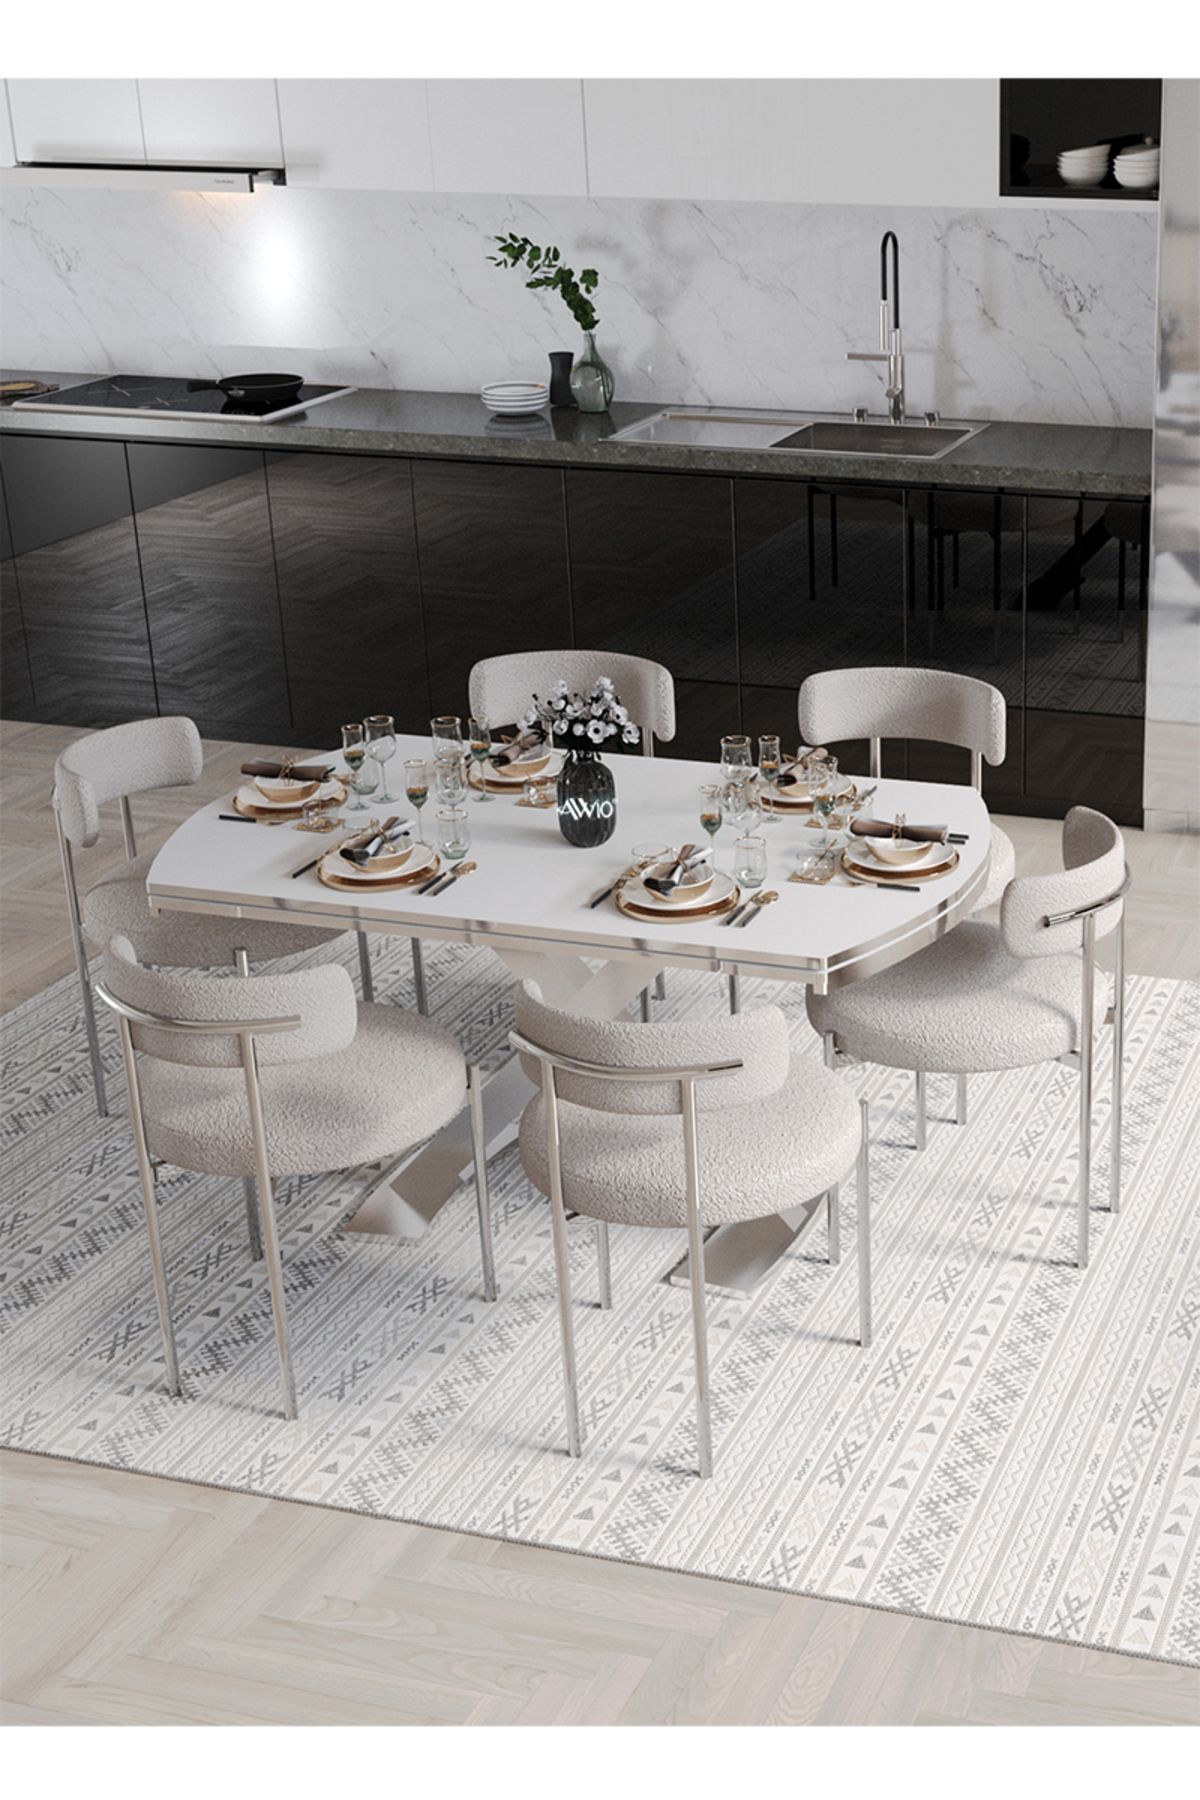 Avvio Wella Lak Panel 80x130 Açılır Yemek Masası Mutfak Masası 6 Kişilik Masa Sandalye Takımı